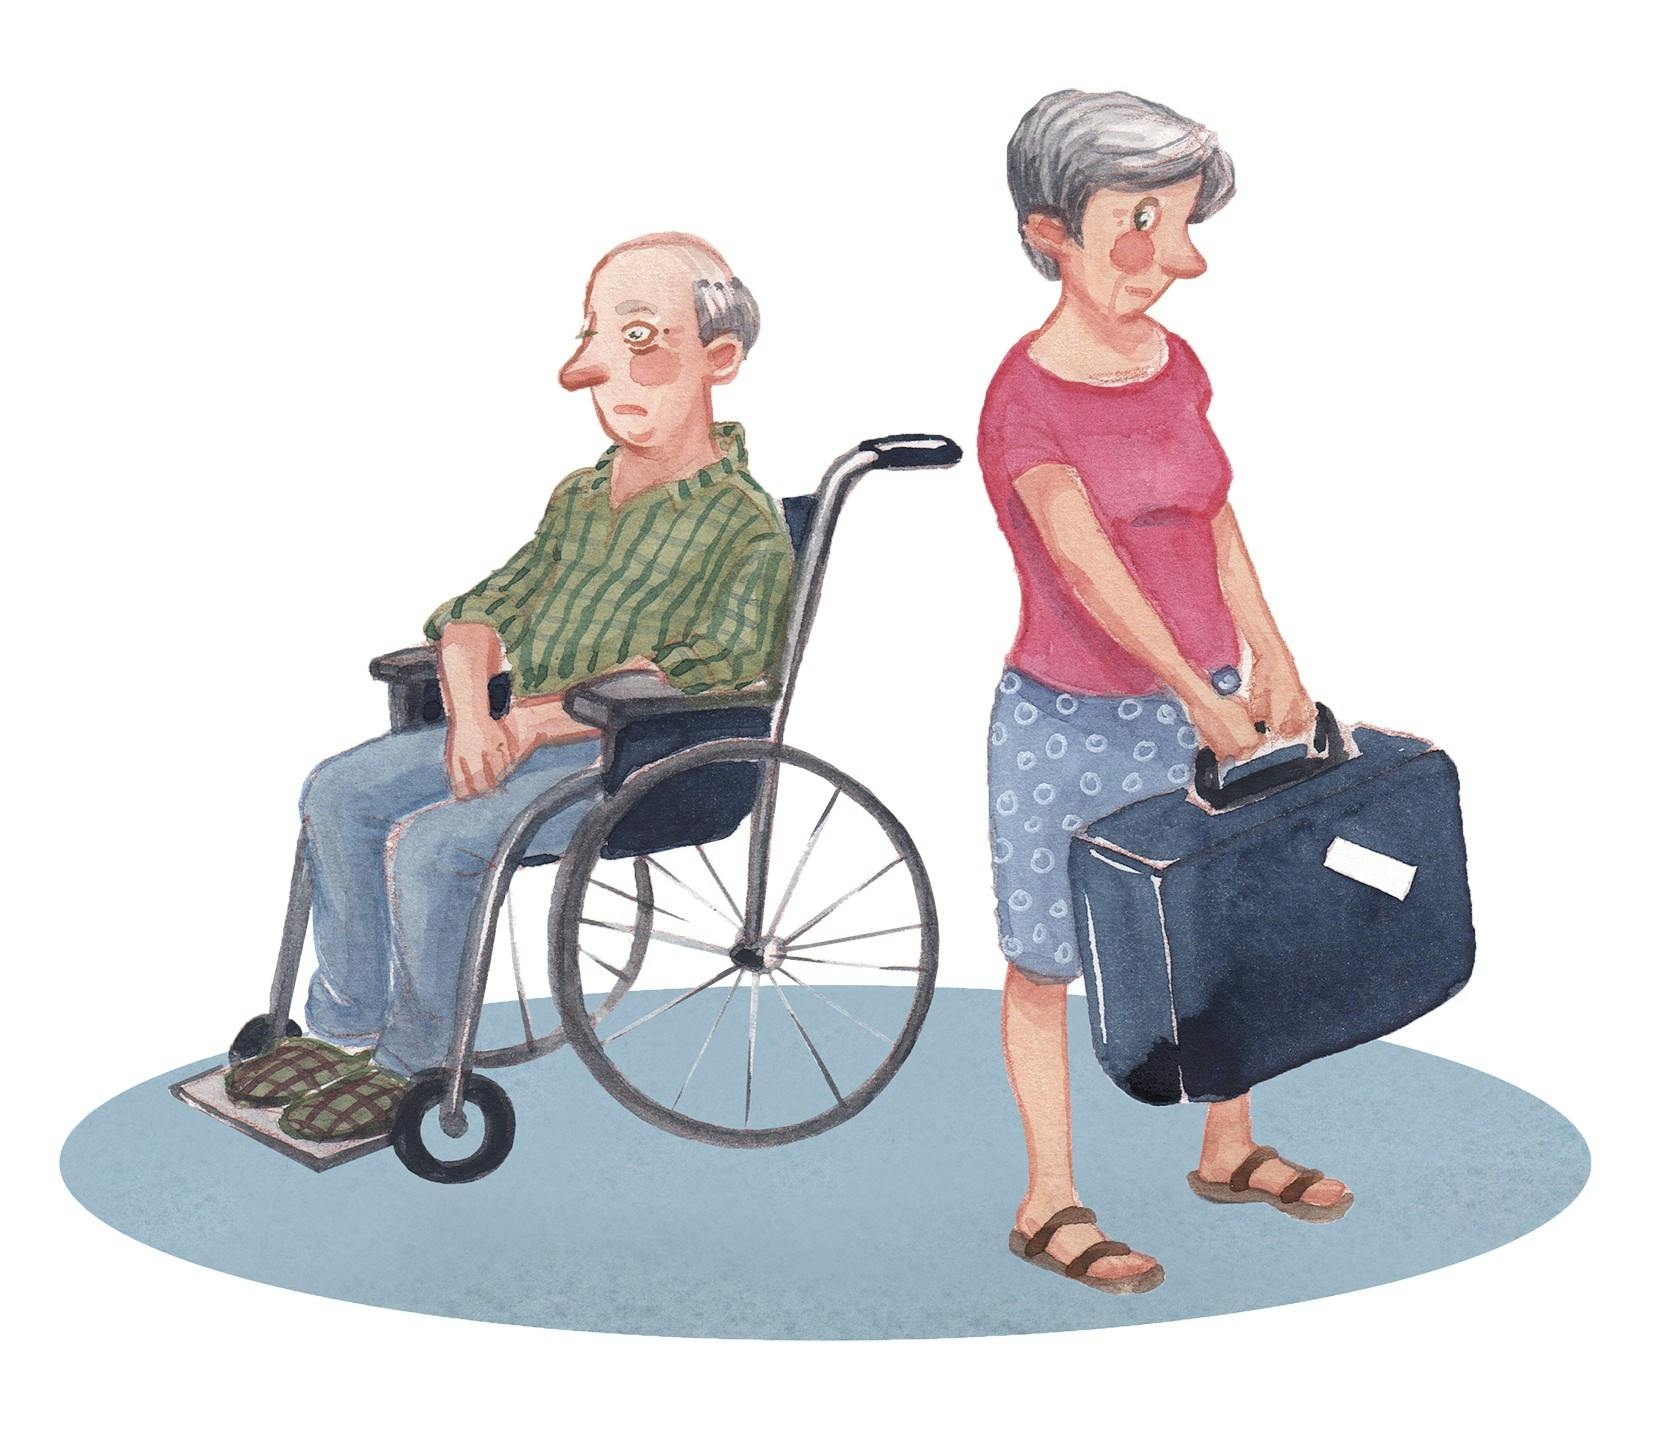 To ældre personer, hvor kvinden holder en kuffert